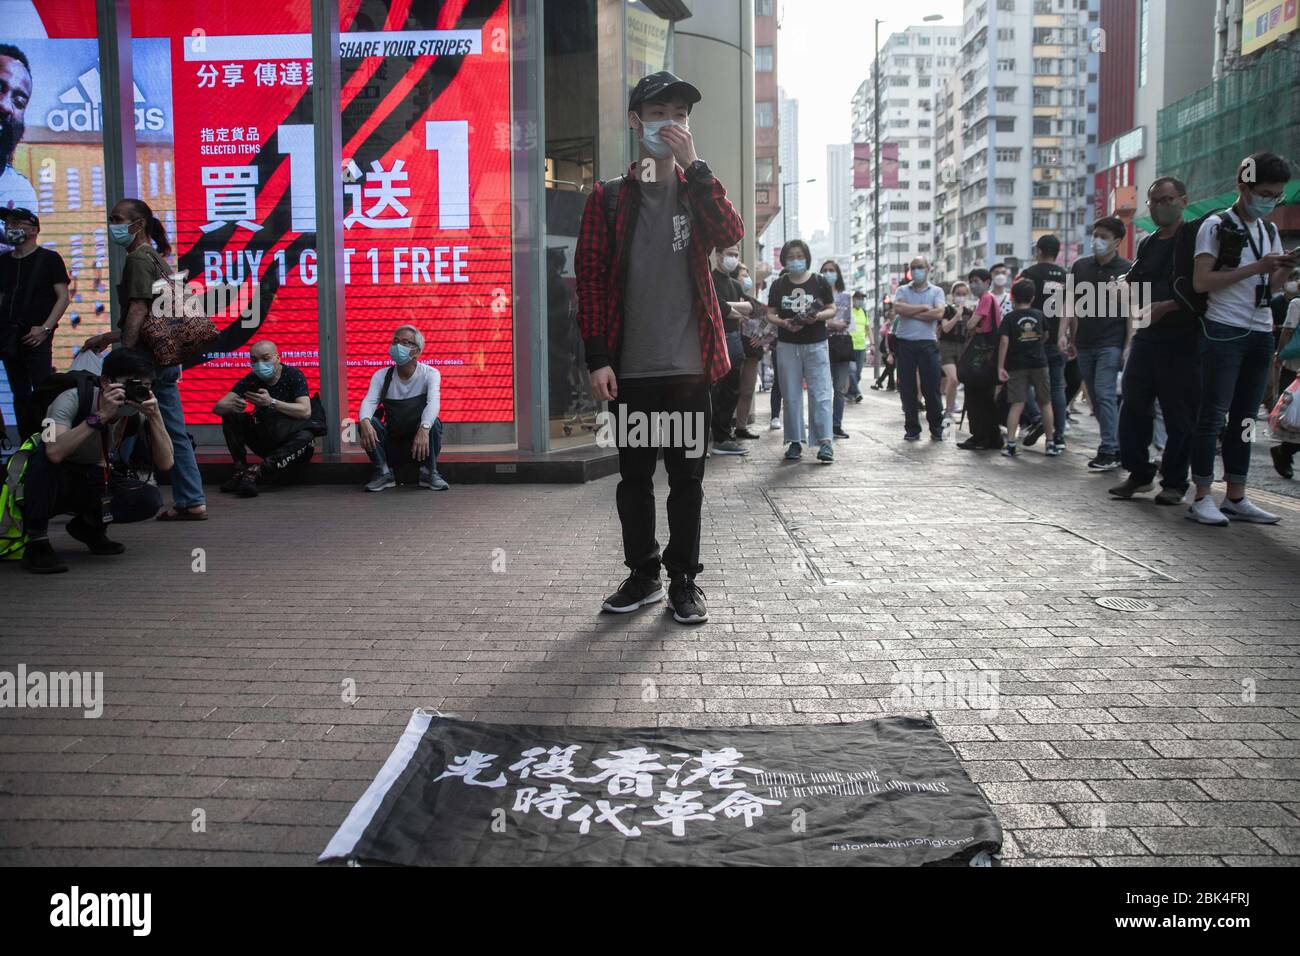 Un manifestante se encuentra frente a una bandera con un mensaje a favor de la independencia mientras llevaba una máscara facial como precaución contra el virus de la corona, durante la manifestación.defendiendo la prohibición de reunión que siguió a la covid pandemia de 19, los manifestantes se manifiestan contra el gobierno de Hong Kong y la jefa ejecutiva Carrie Lam el día del Trabajo, 1 de mayo. Foto de stock